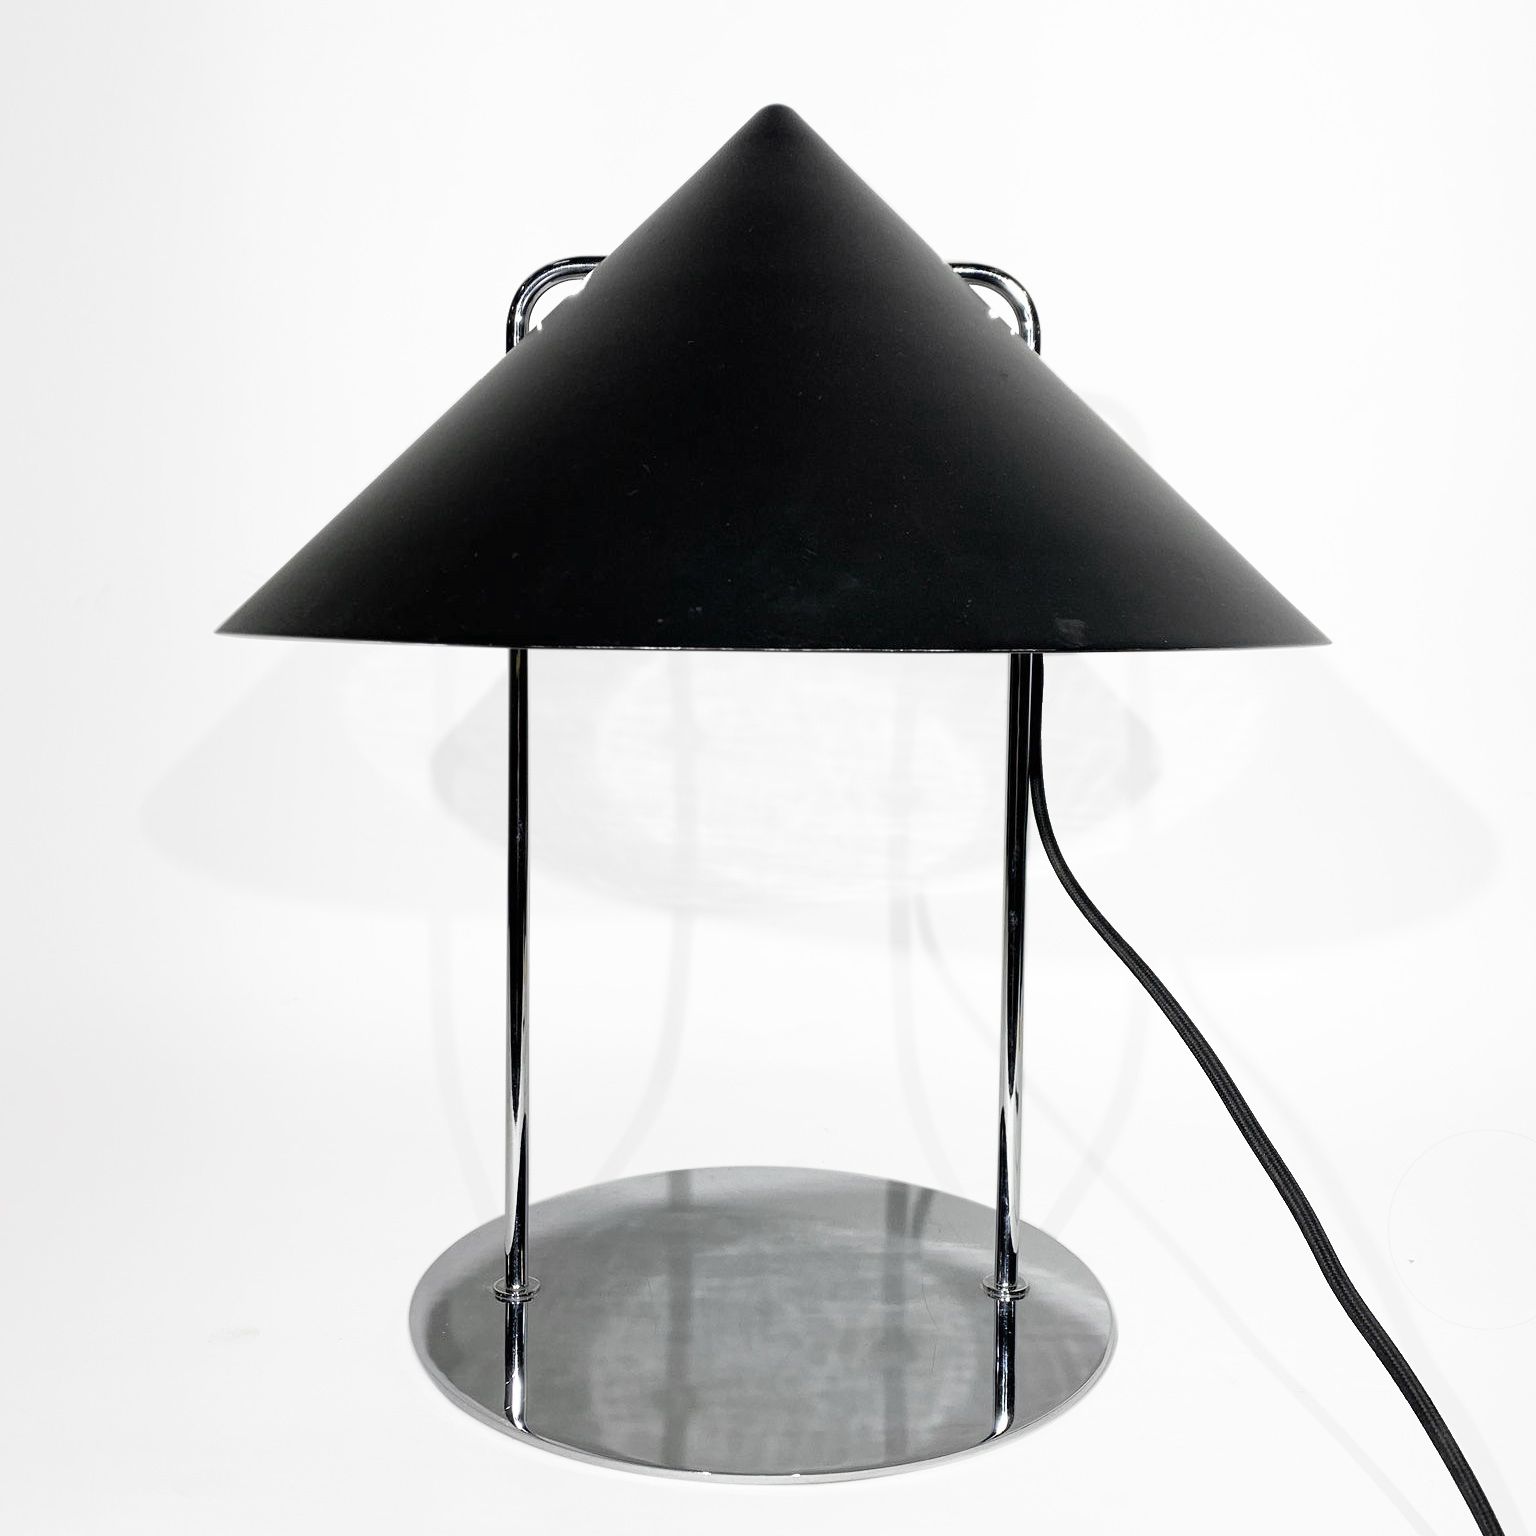 MAISON FORESTIER PARIS 现代主义台灯模型 "SG-3517D

黑色漆面金属板和镀铬金属 

高_42厘米，宽_35厘米